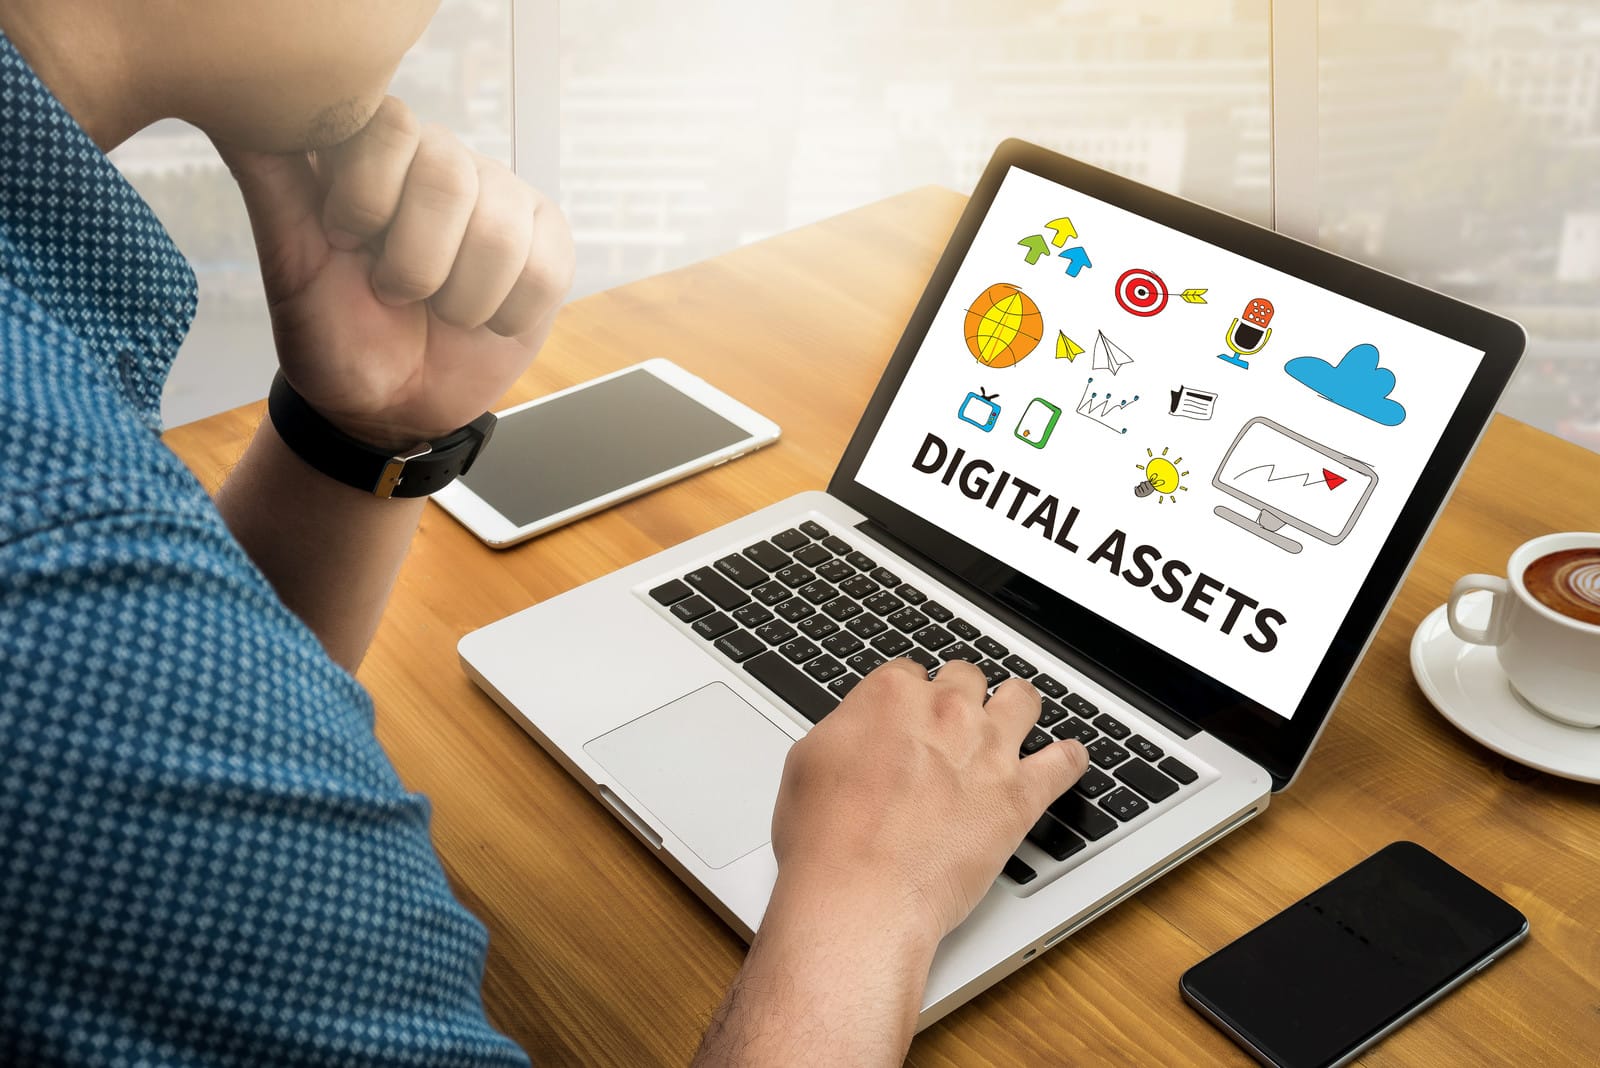 Digital Age - Digital Assets (40872284)